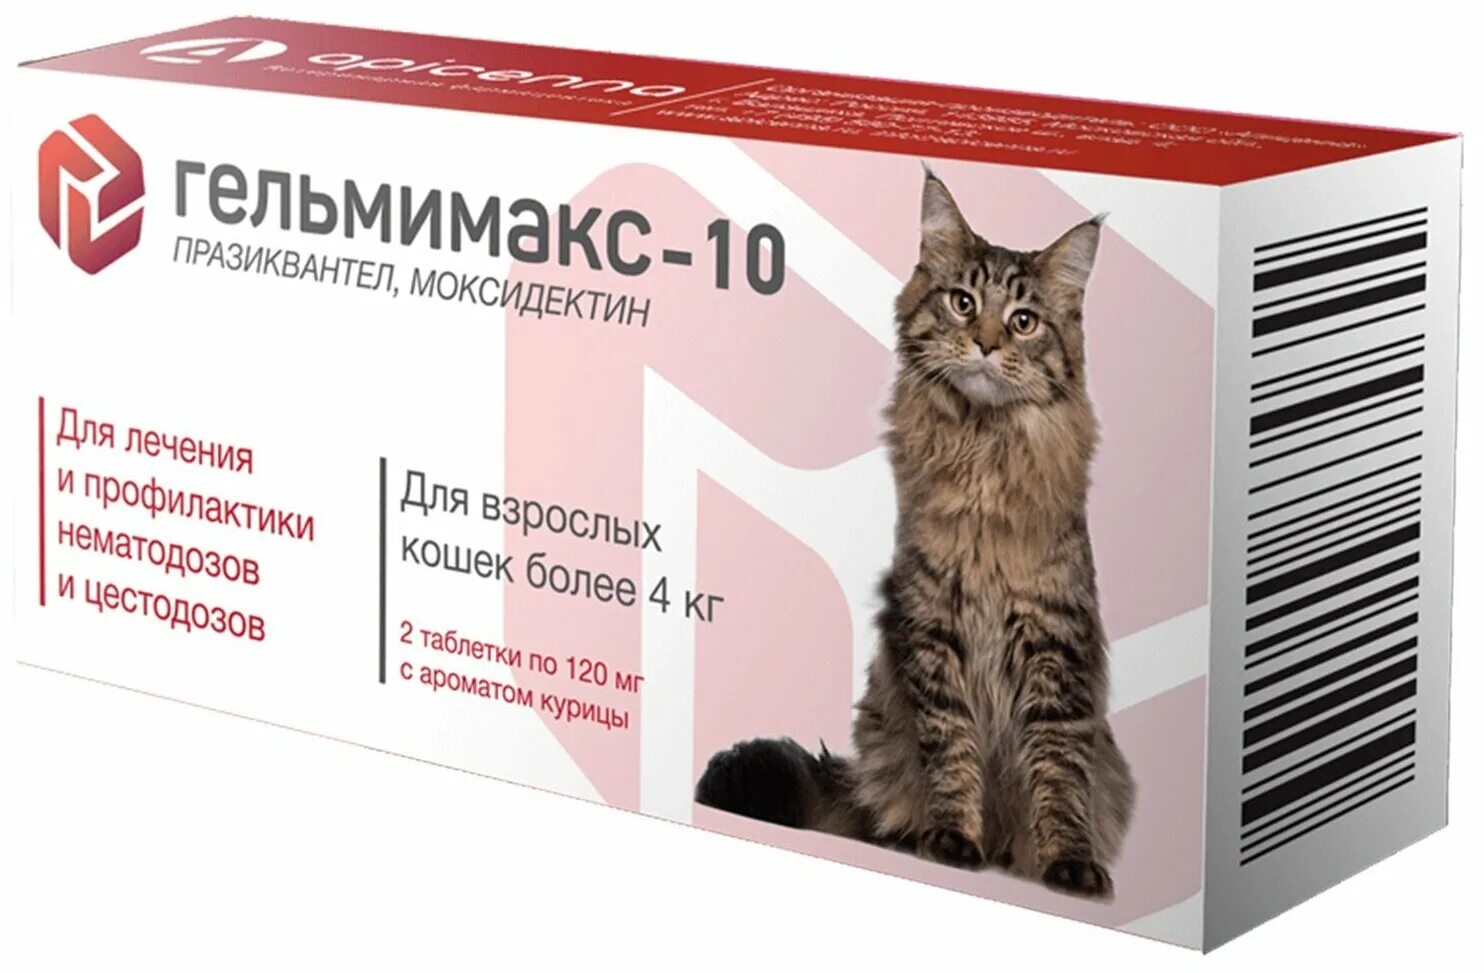 Купить лекарства кошки. Гельмимакс-4 д/взрослых кошек и котят 2*120 мг. Гельмимакс для кошек таблетка. Гельмимакс- 4 для кошек и котят 2 табл*120 мг 1/10/60. Гельмимакс 10 таблетки для кошек.